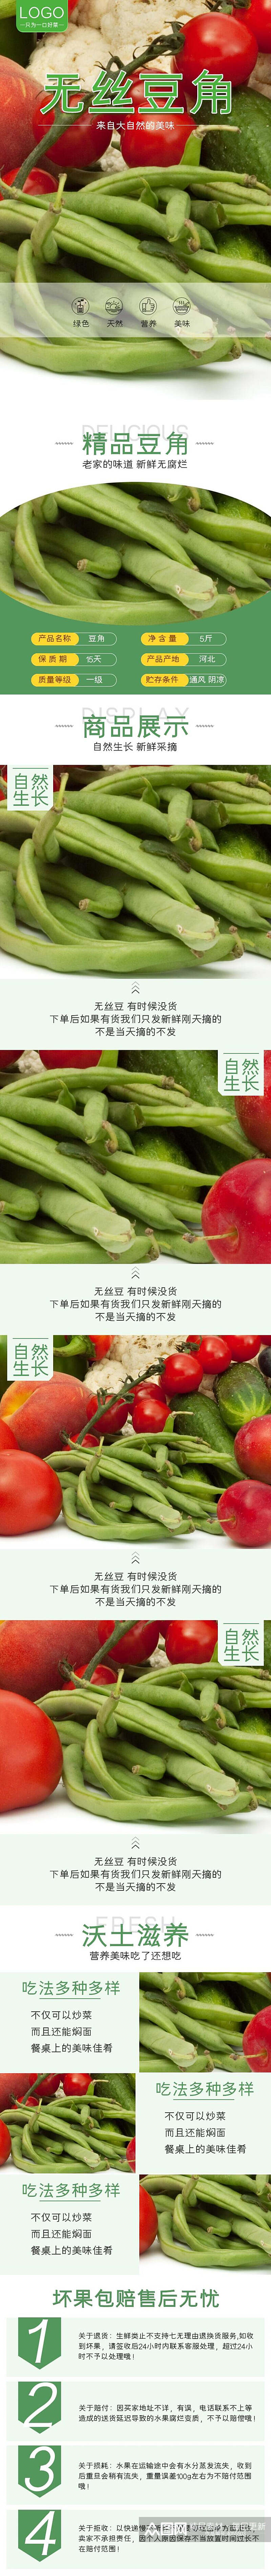 无丝豆角蔬菜手机版详情页素材